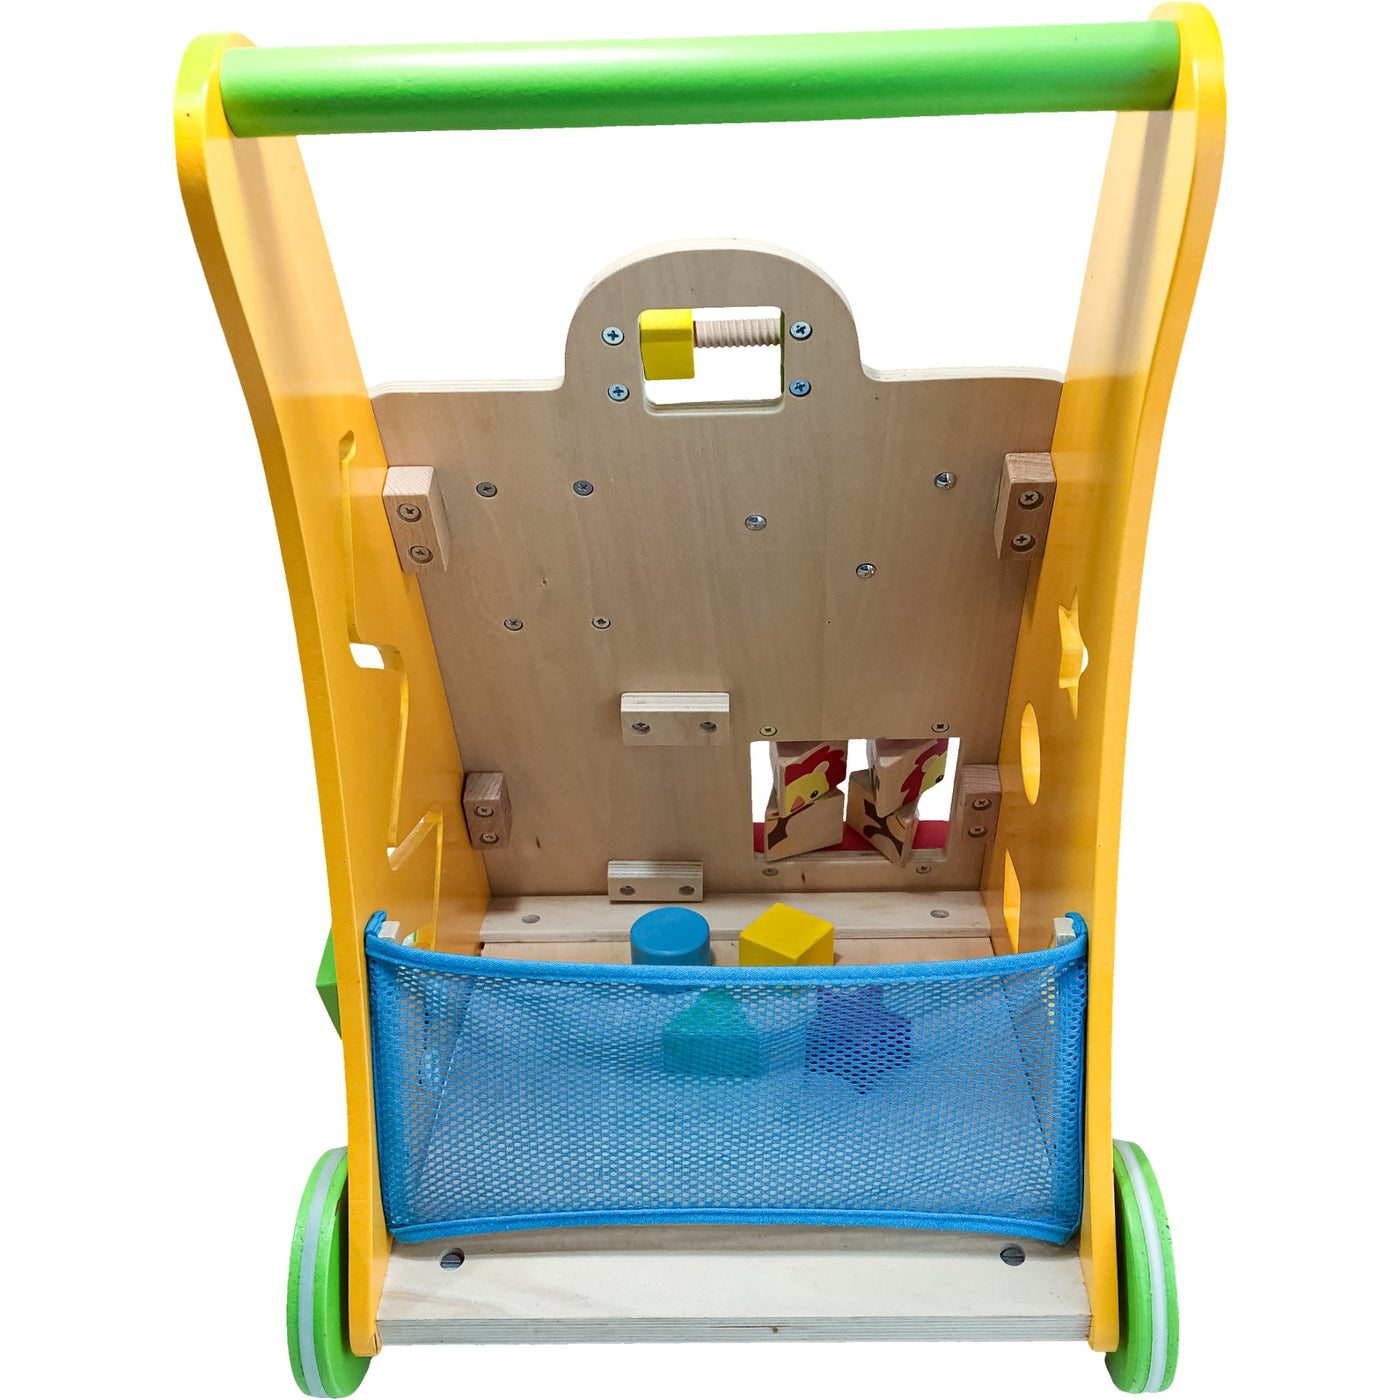 Chariot de marche "Chariot de marche Multi-activités" de seconde main en bois pour enfant à partir de 12 mois - Vue 3